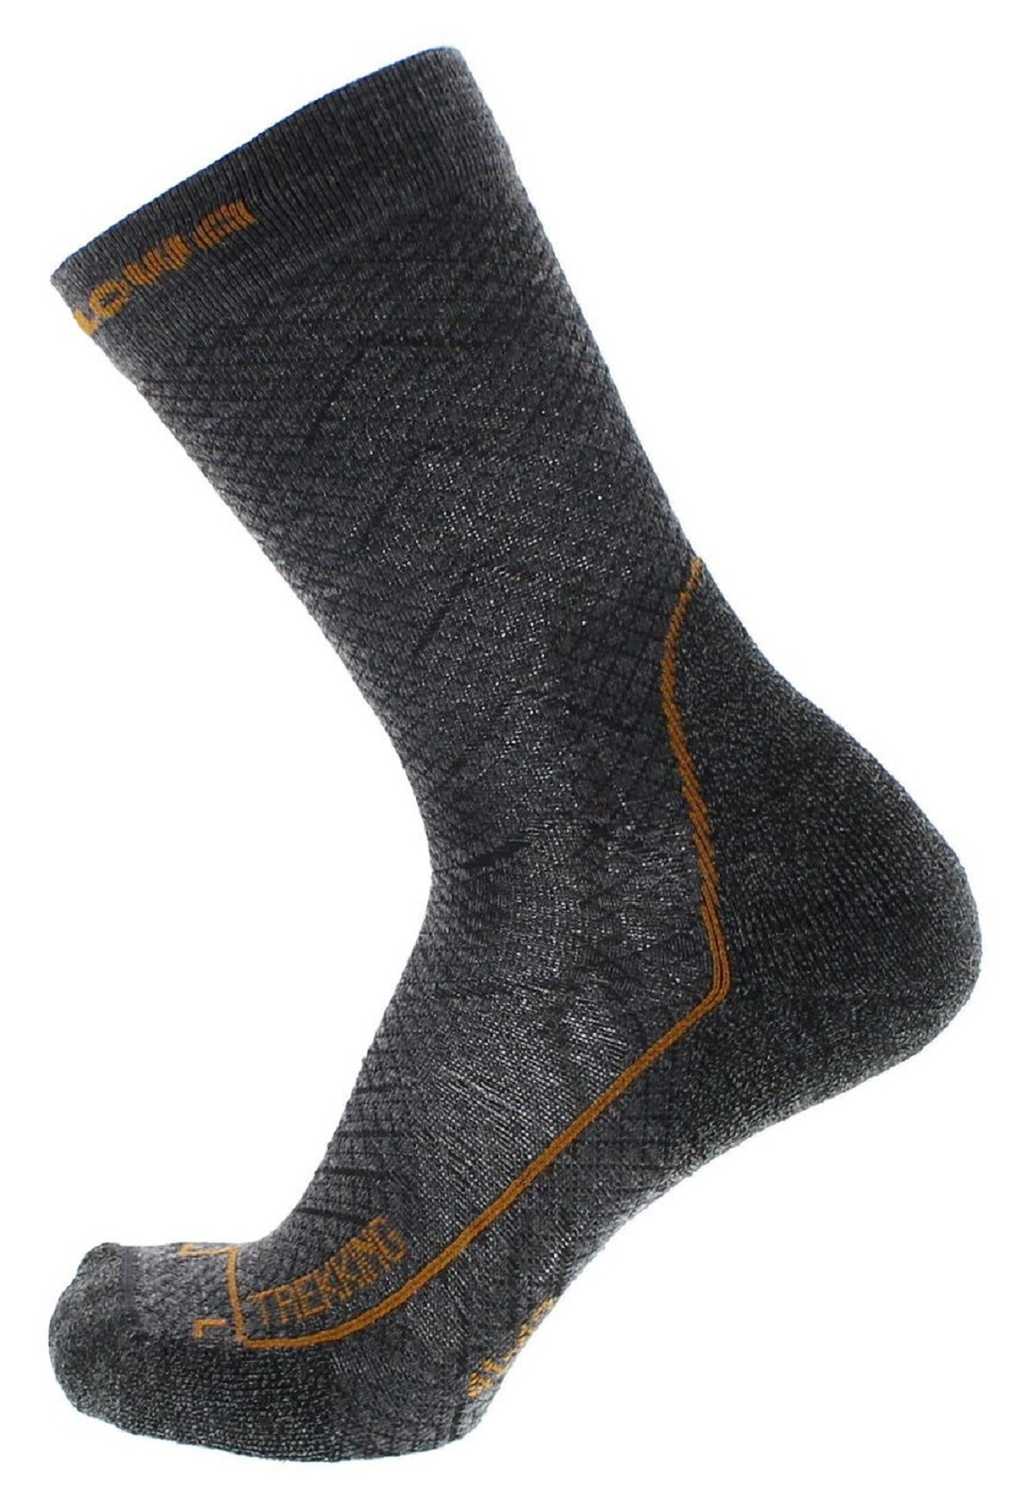 LS Trekking Socke Grau Unisex Socken von Lowa